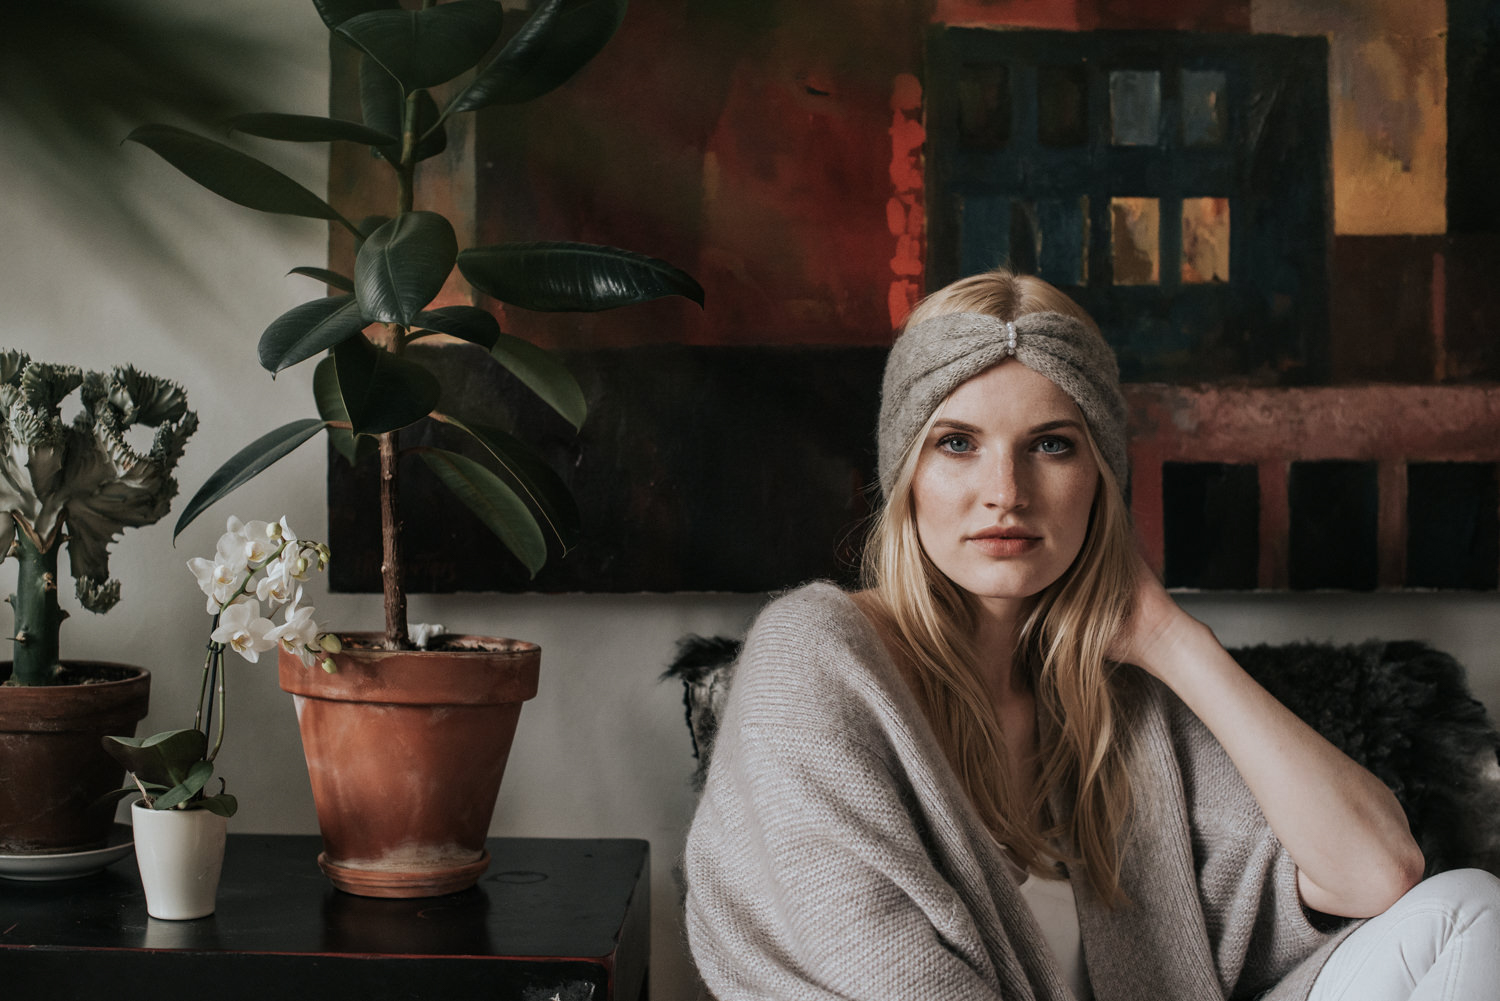 Portrait session | ALMA knitwear 38